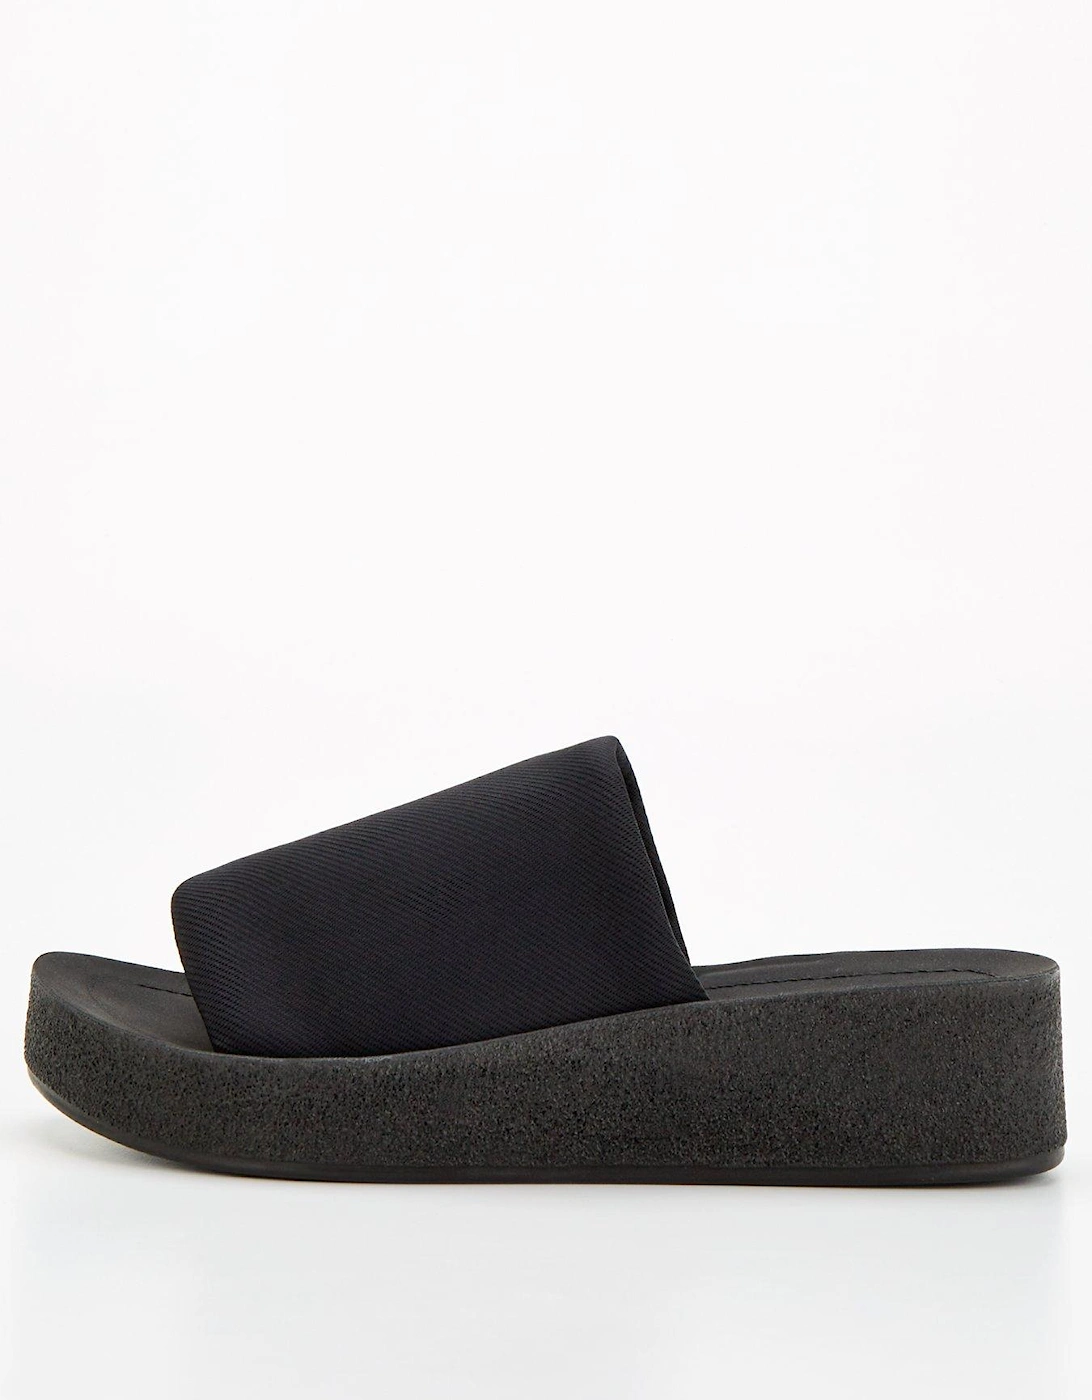 Wide Fit Slip On Comfort Wedge Sandal - Black, 7 of 6